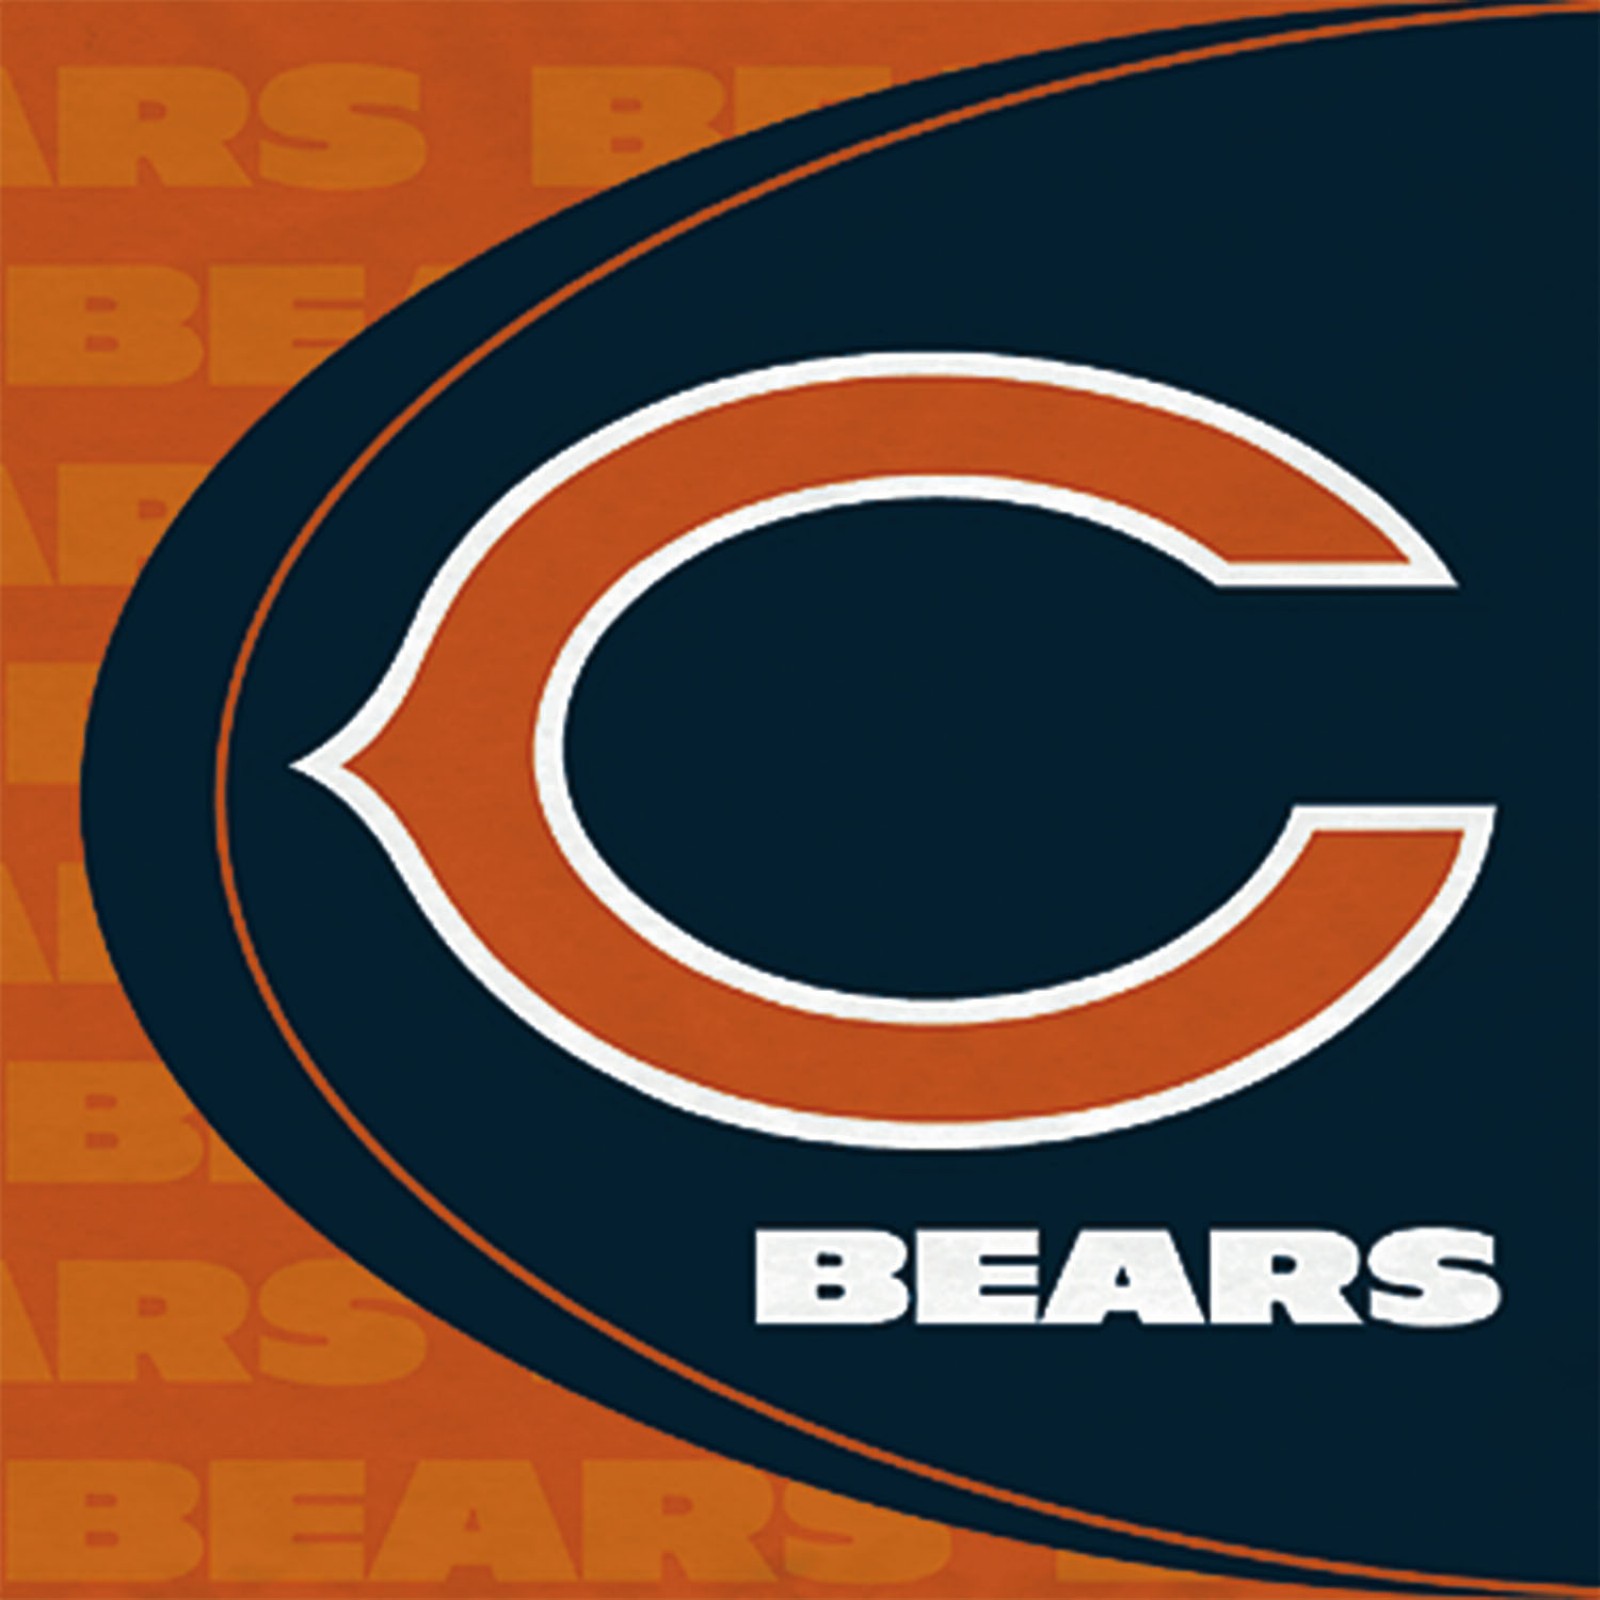 76+] Chicago Bears Screensavers Wallpapers - WallpaperSafari